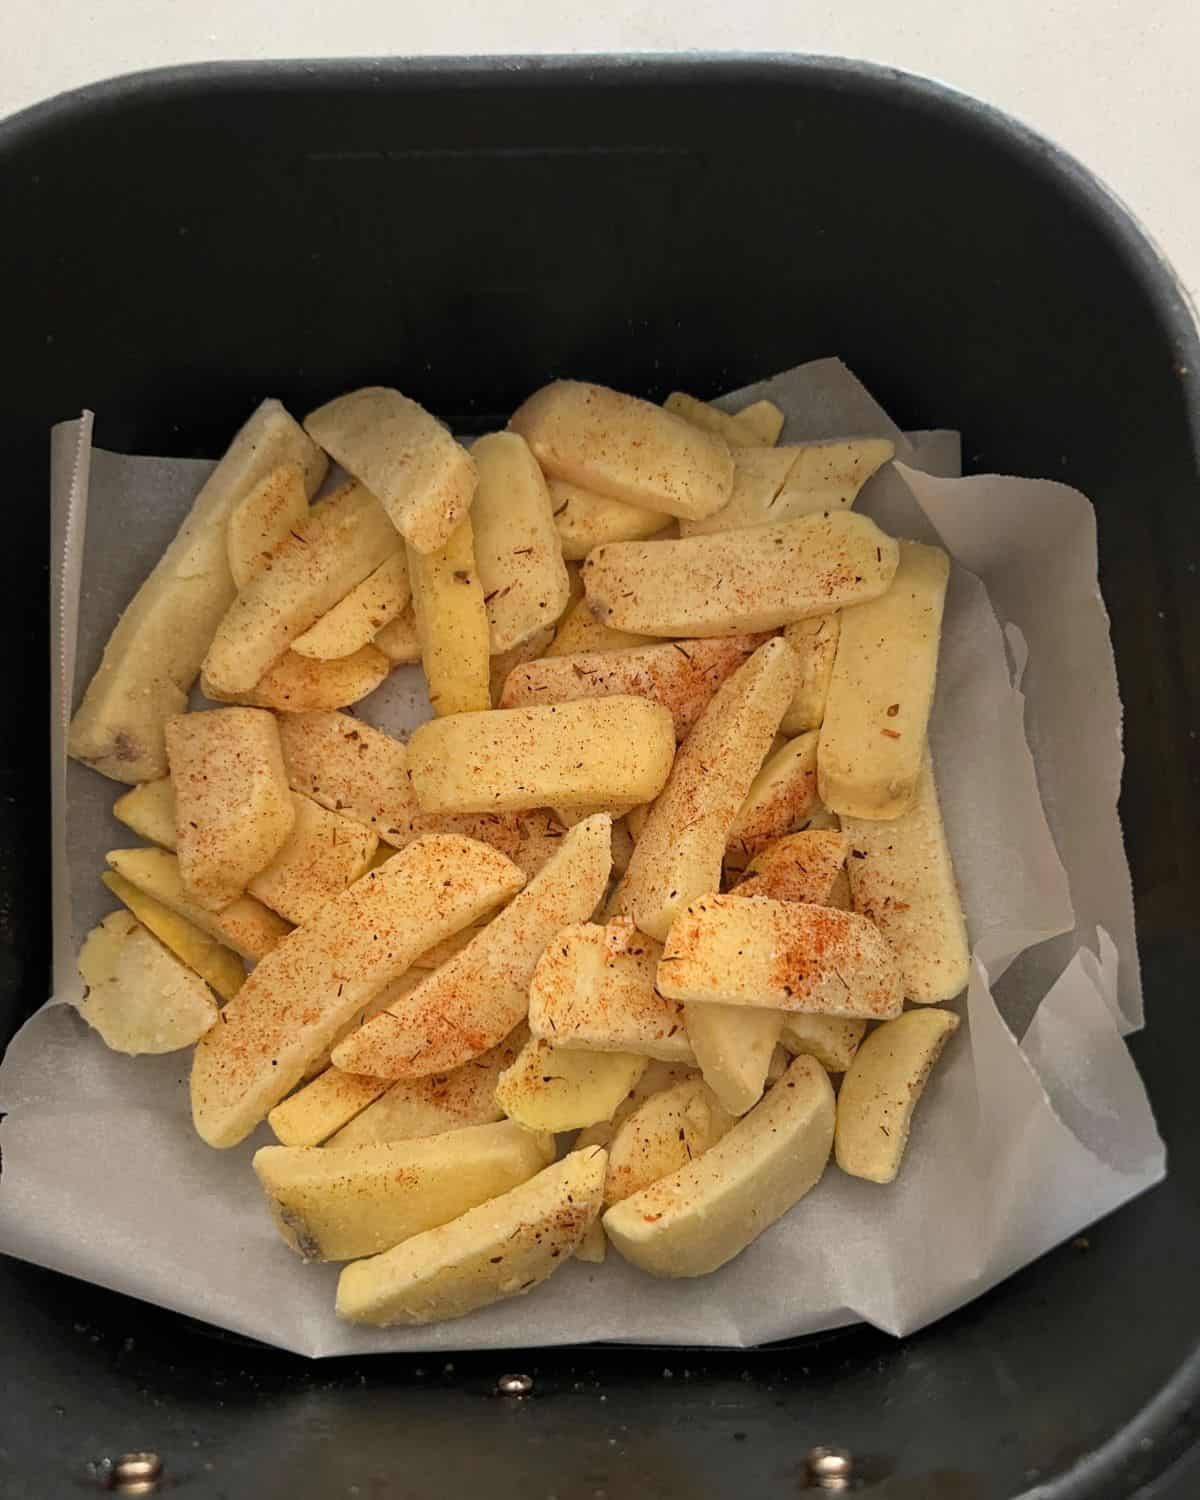 Seasoned french fries in air fryer. 